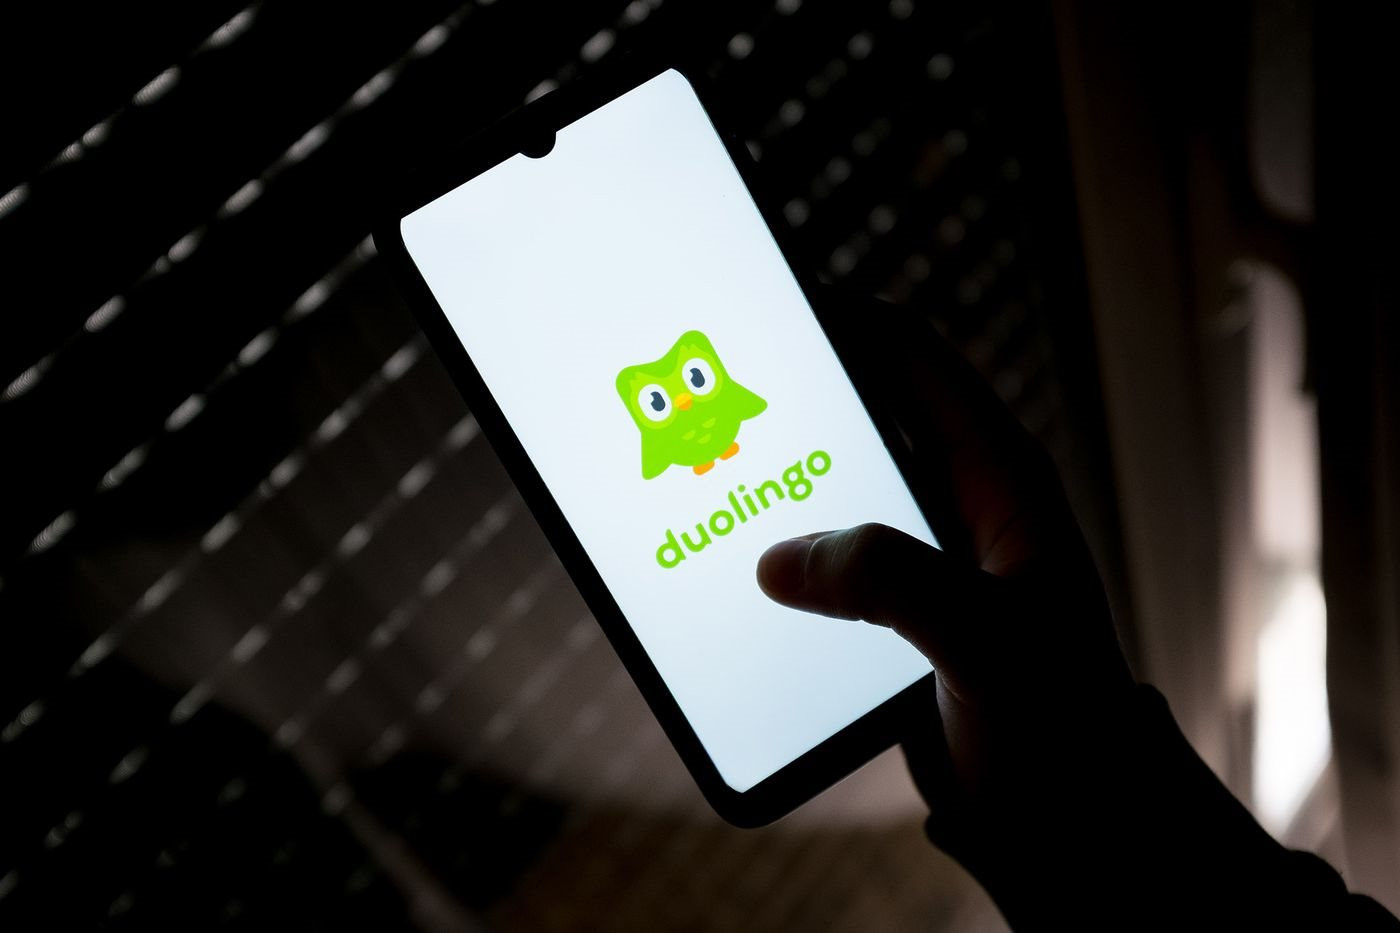 Duolingo: Từ một startup thua lỗ, CEO không màng doanh thu đến đế chế thay đổi 'cuộc chơi' học ngoại ngữ trực tuyến - Ảnh 2.